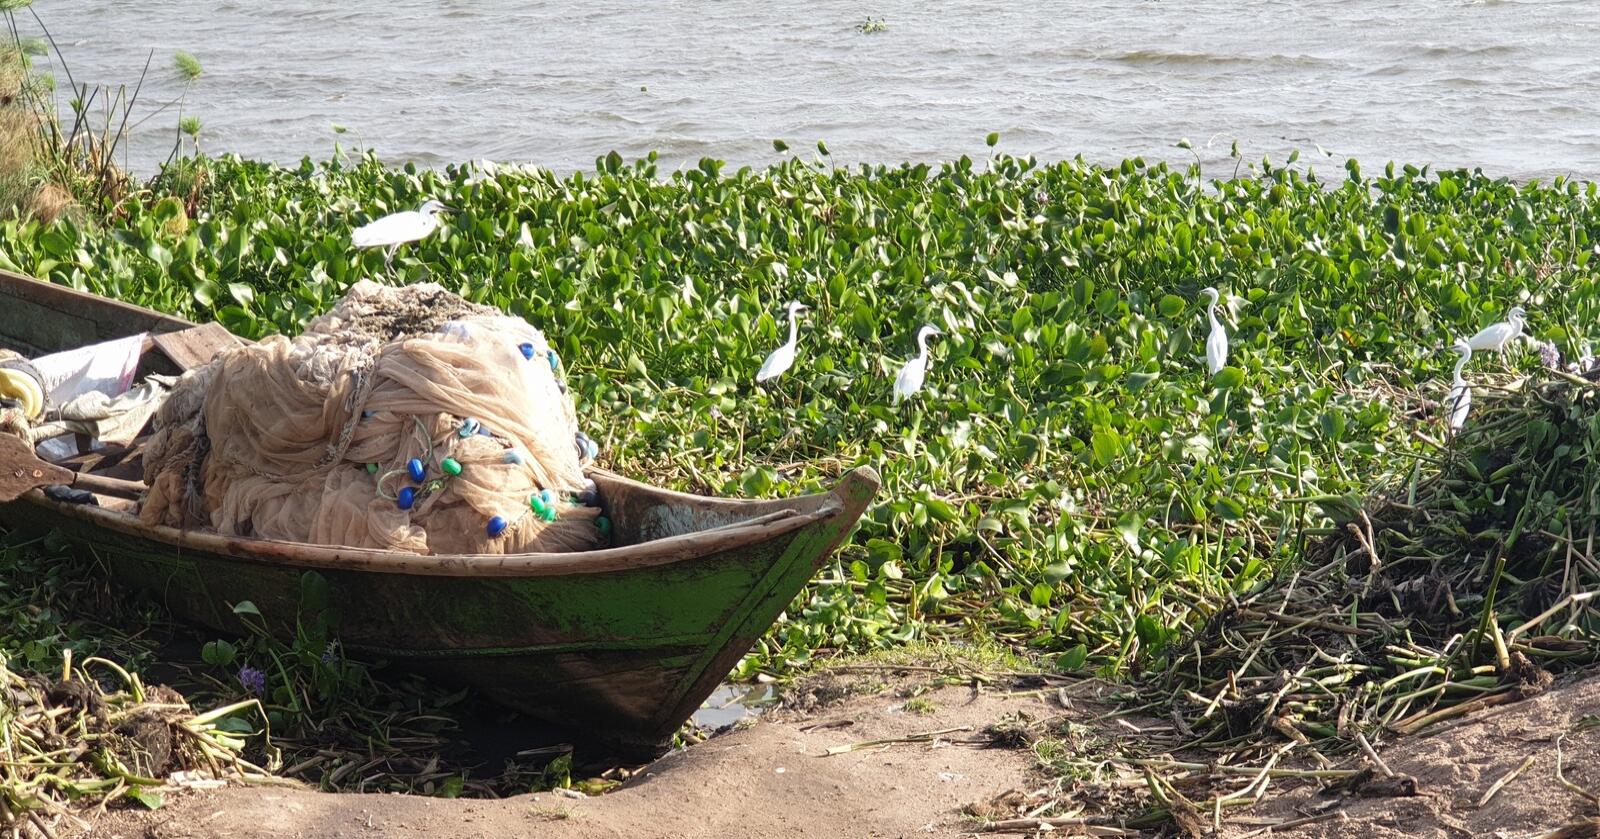 Miljøproblem: Vannhyasinten sprer seg raskt på Victoriasjøen i Afrika, og skaper problemer for livet i vannet og fremkommelighet for båter. Planten kommer opprinnelig fra Amazonas, men har spredd seg til en rekke innsjøer og stilleflytende elver i Afrika og Asia. (Foto: Privat)